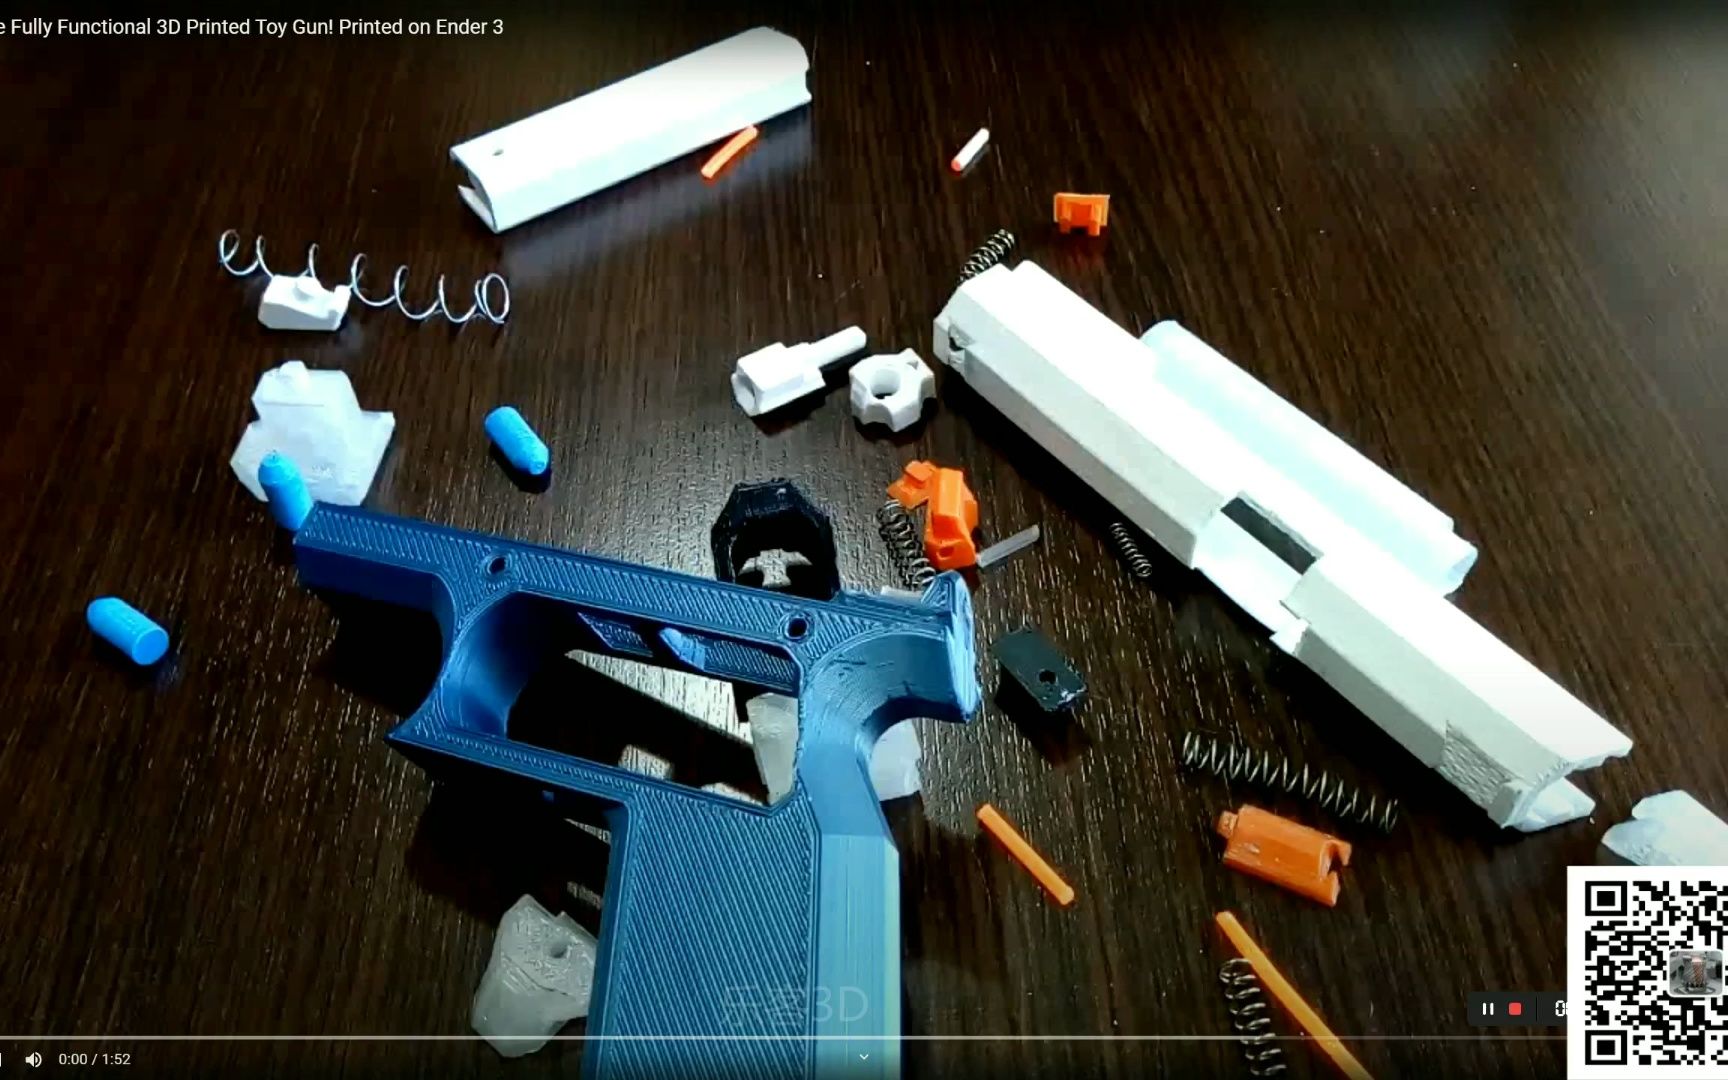 令人难以置信的全功能 3D 打印玩具枪！